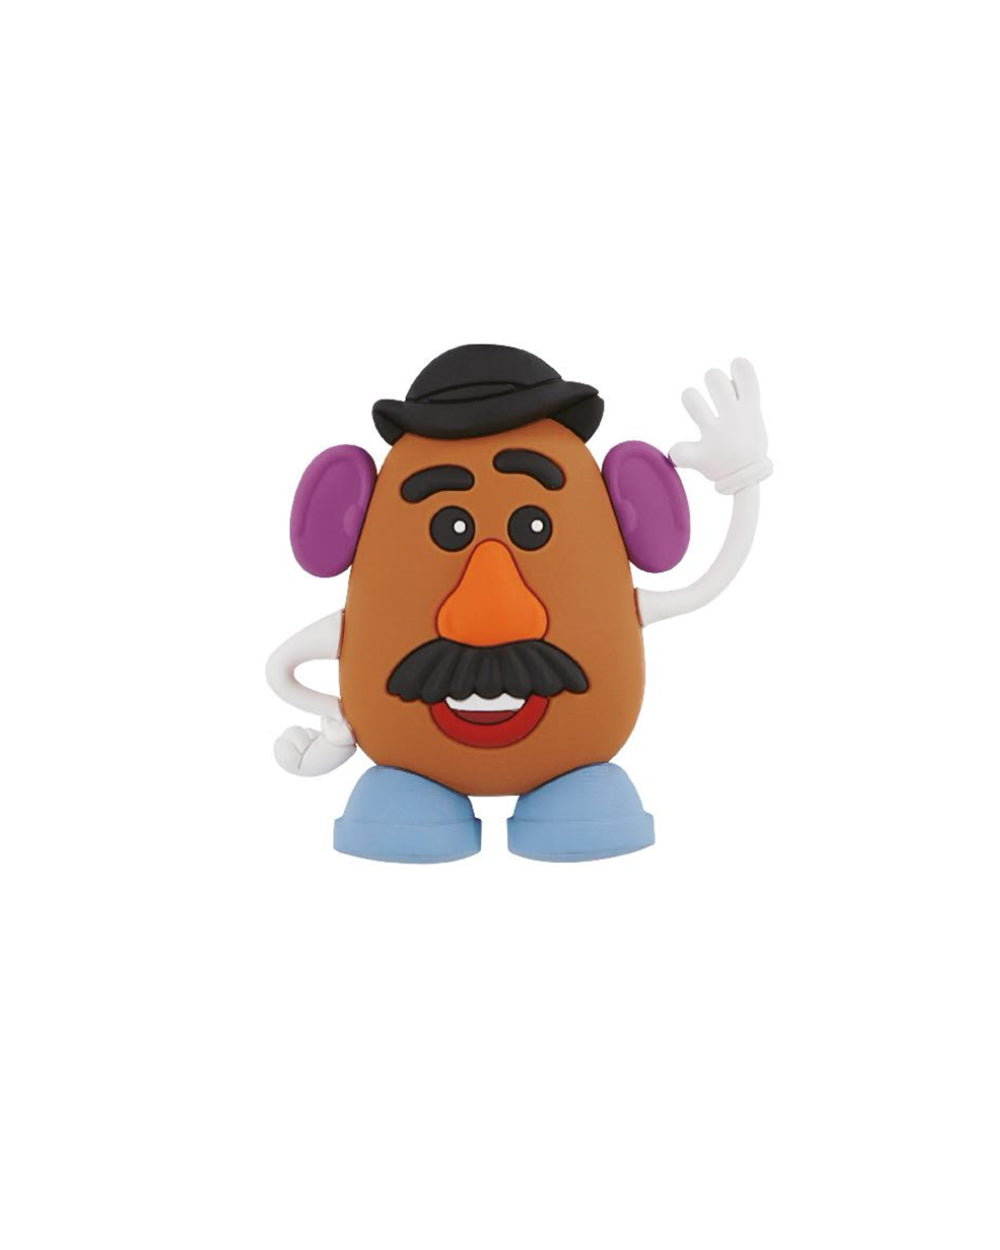 MR Potato Head, Pixar